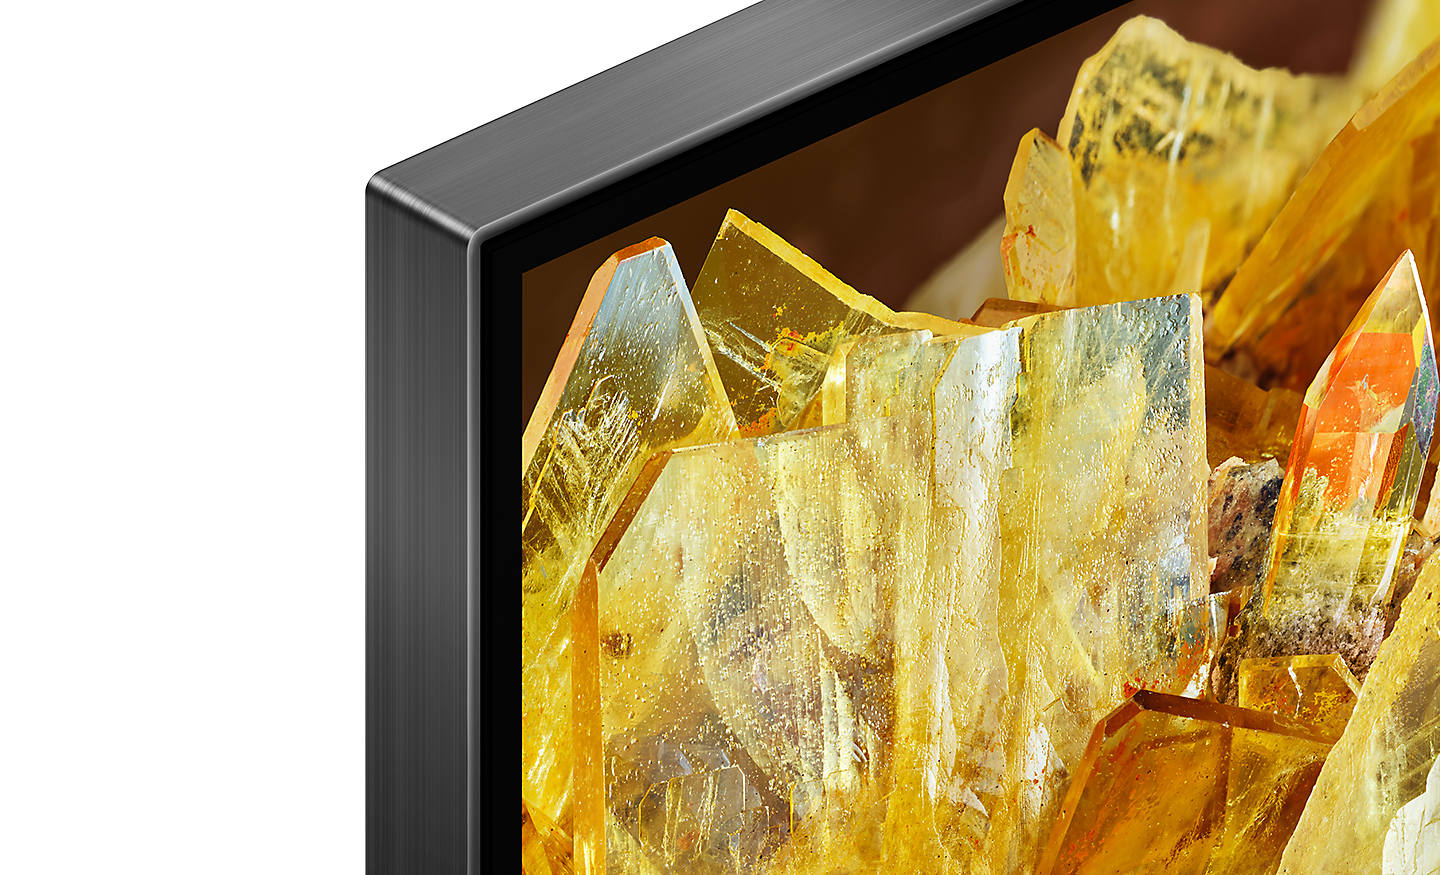 U kutu TV-a prikazani su zlatni kristali na zaslonu